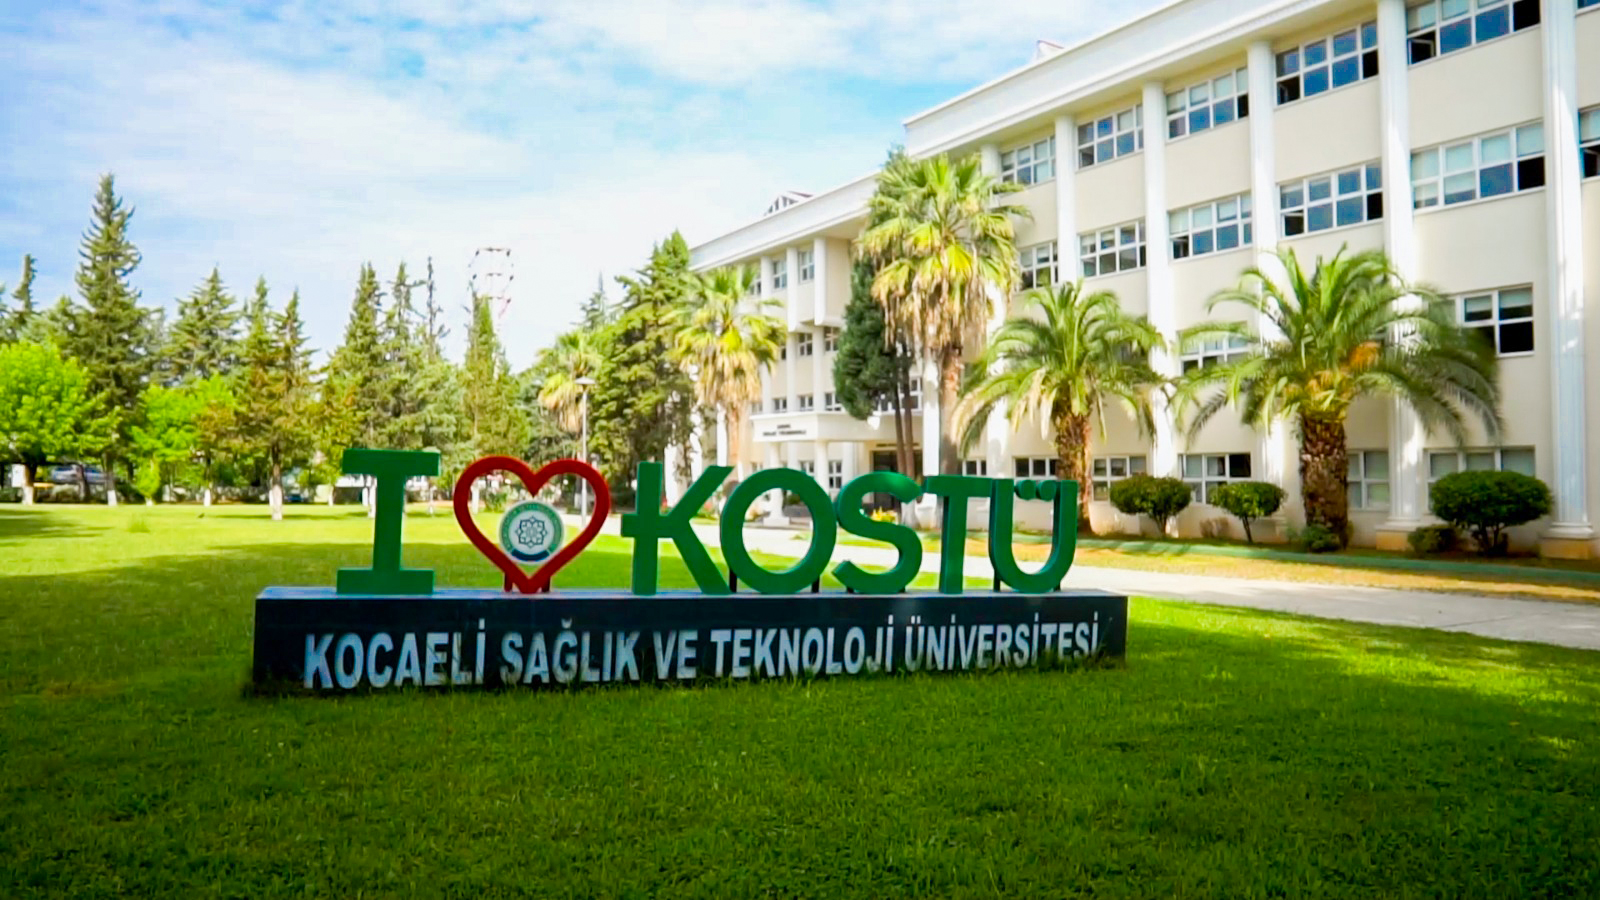 kocaelitek universitesi find and study 1 2 - Kocaeli Sağlık ve Teknoloji Üniversitesi